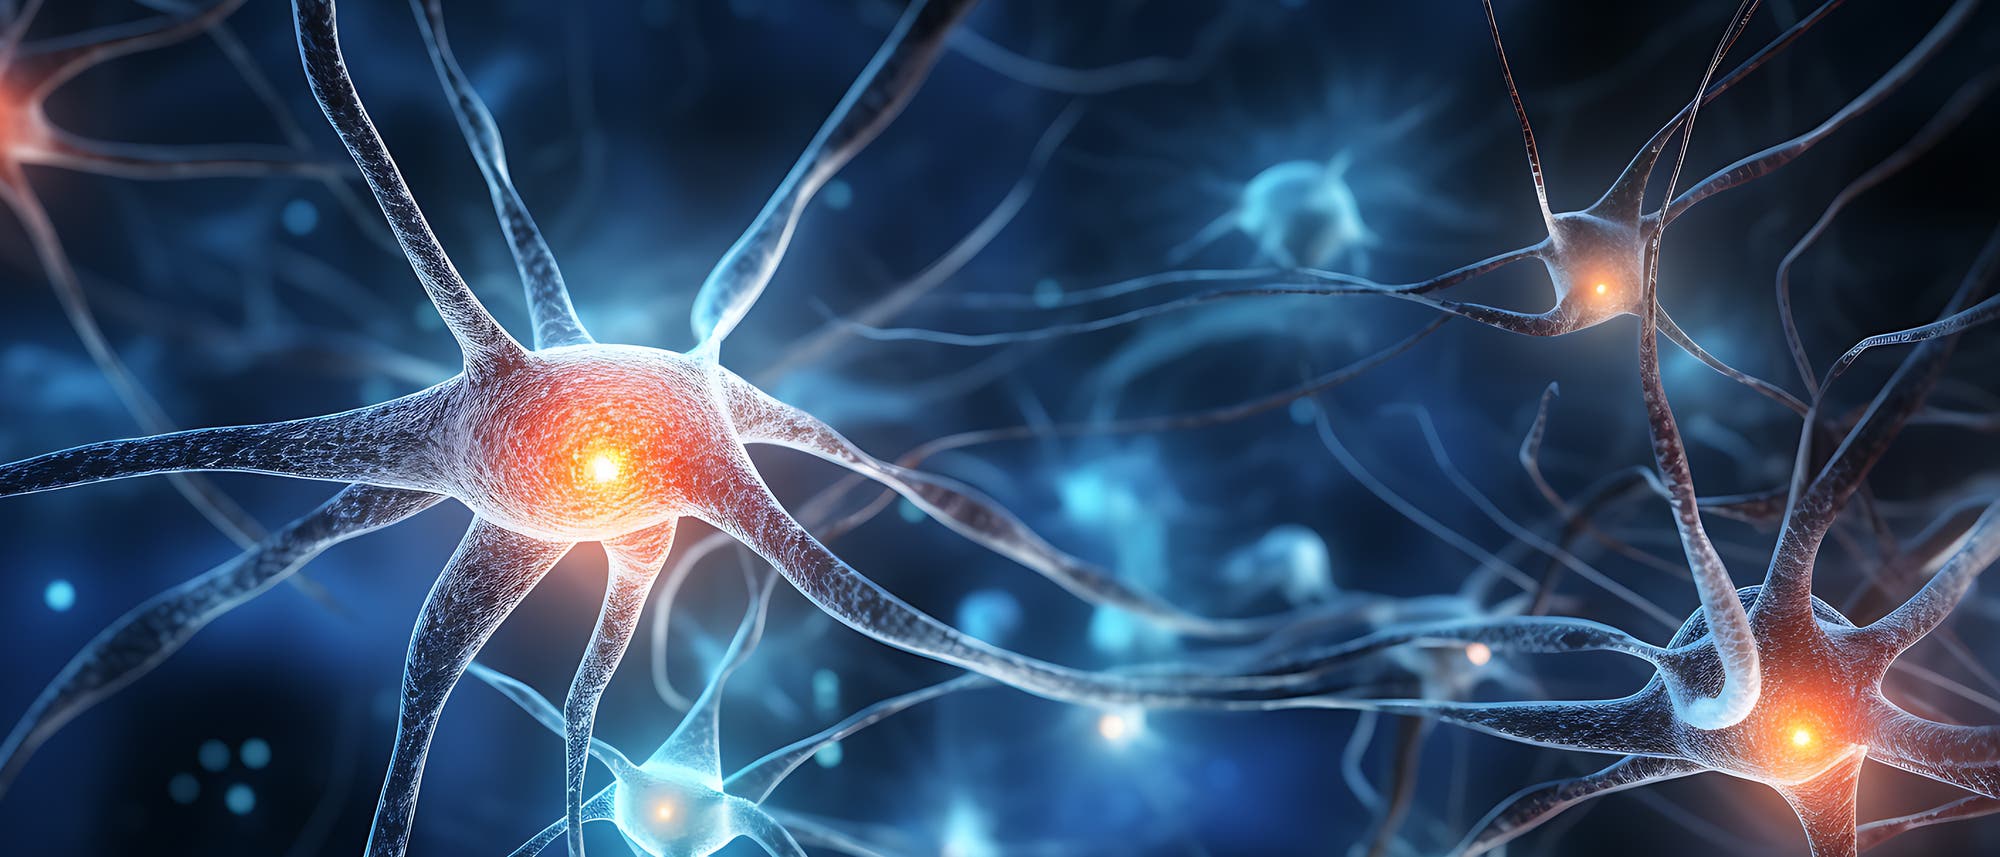 eine stilisierte Nervenzelle dunkelblau dargestellt mit leuchtendem gelbem Fleck im Innern